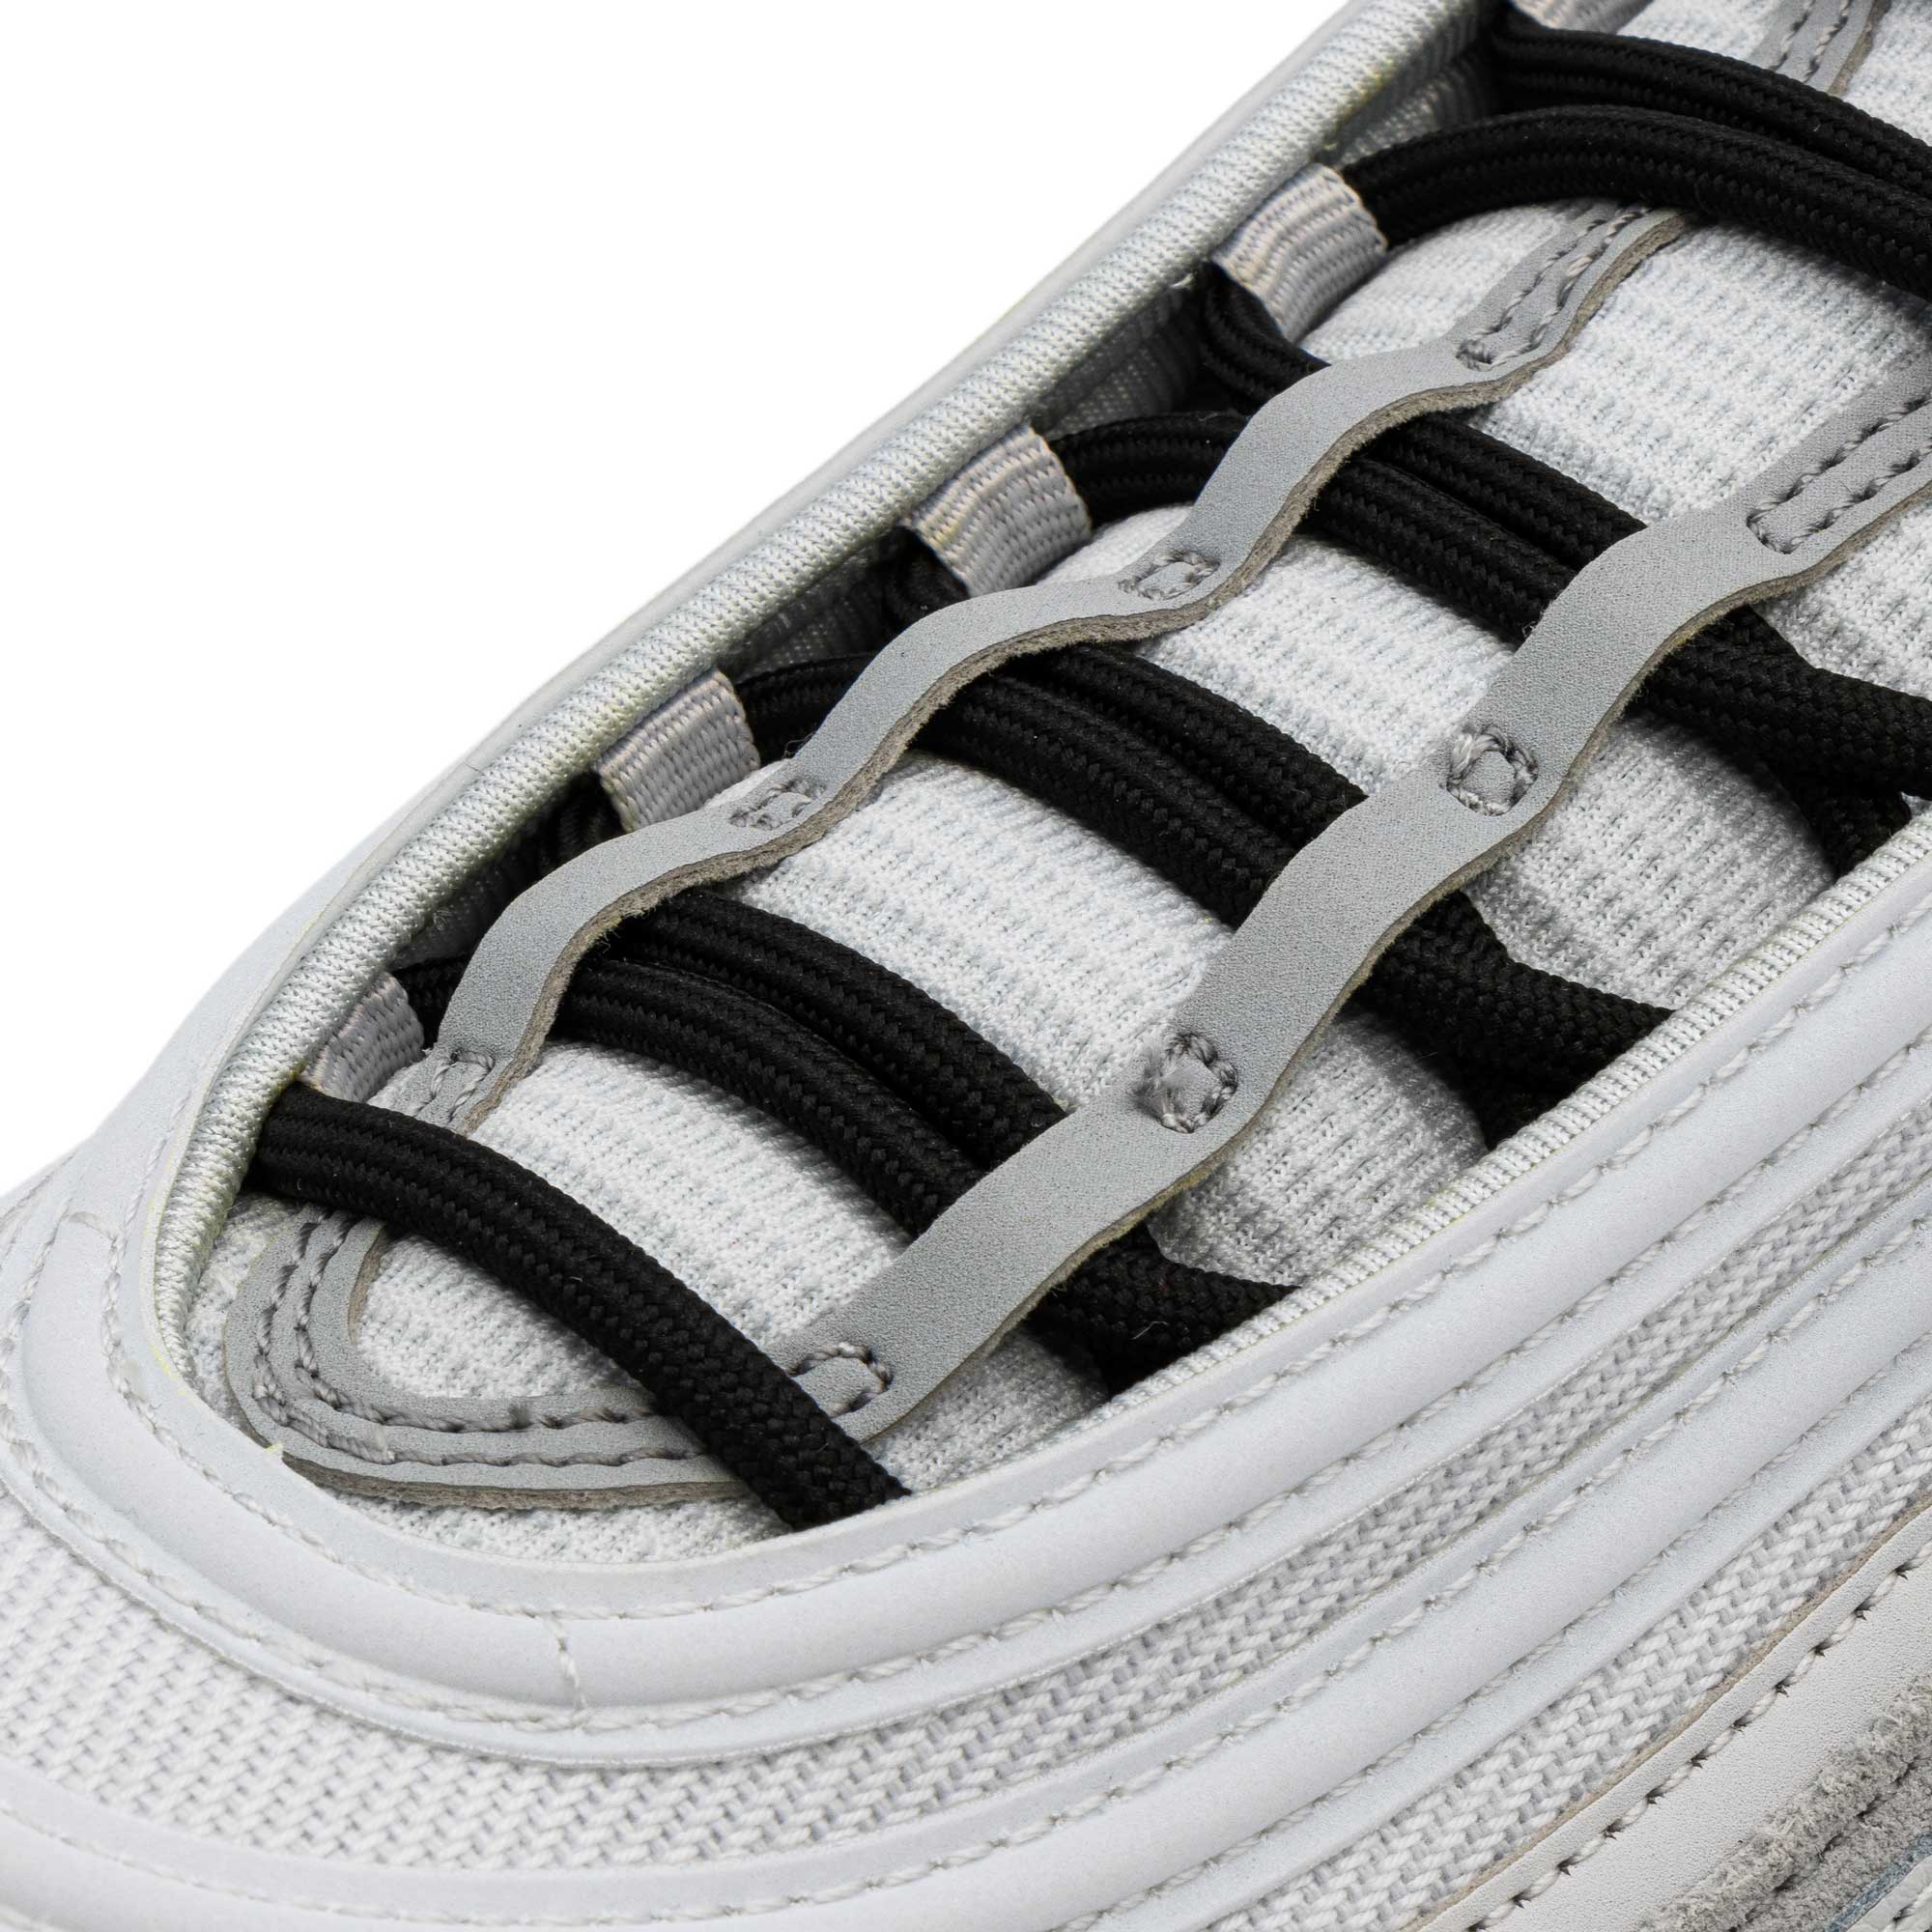 No-Tie Shoelaces | Khaki Laces